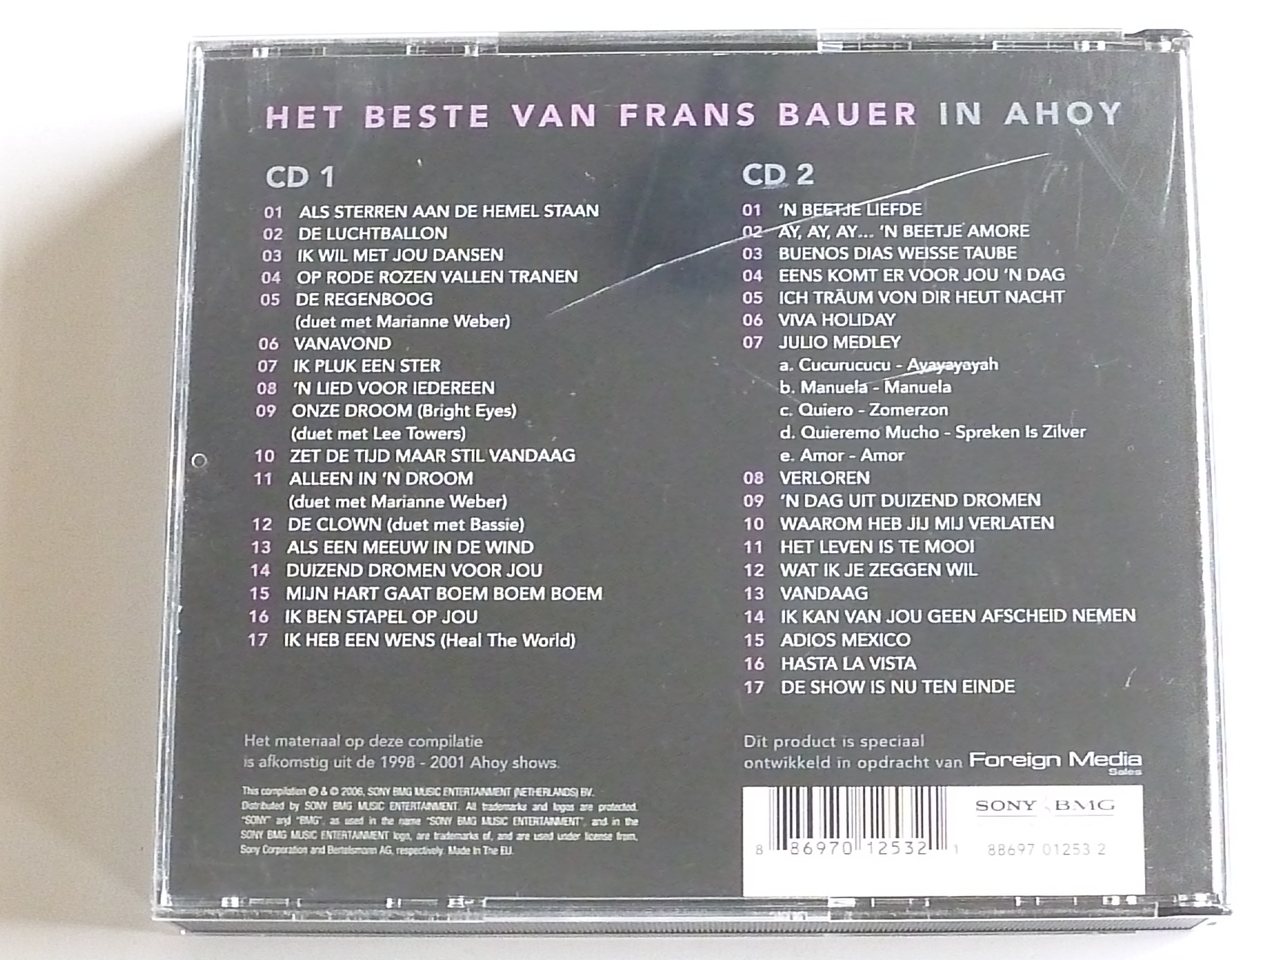 Frans Bauer - Het beste van Bauer in ahoy (2 CD) - Tweedehands CD